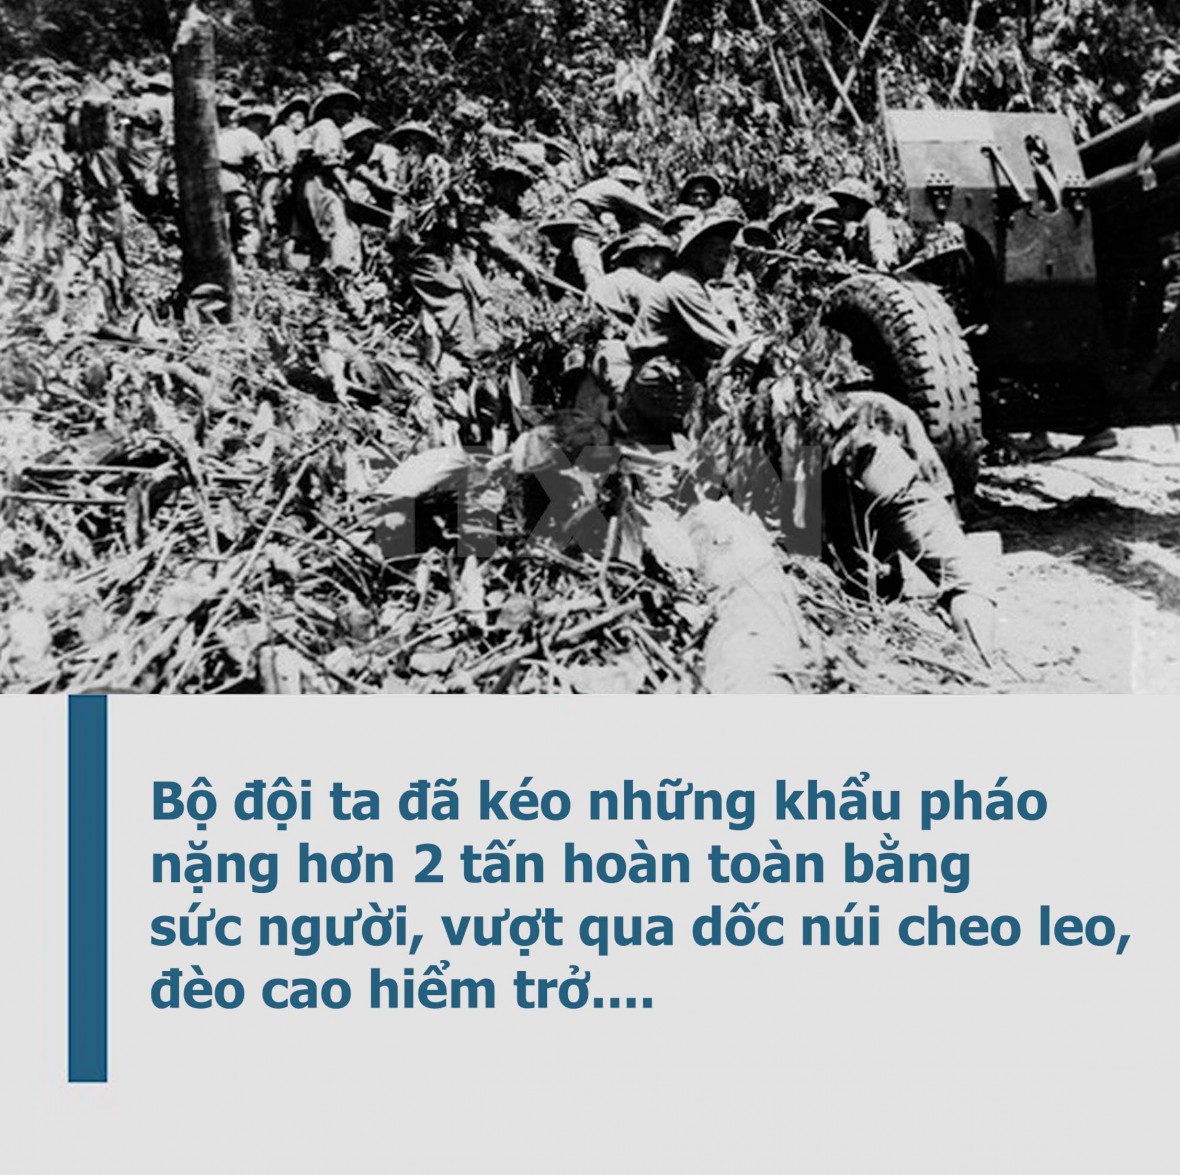 "Huyền thoại" con đường kéo pháo bằng sức người trong chiến dịch Điện Biên Phủ